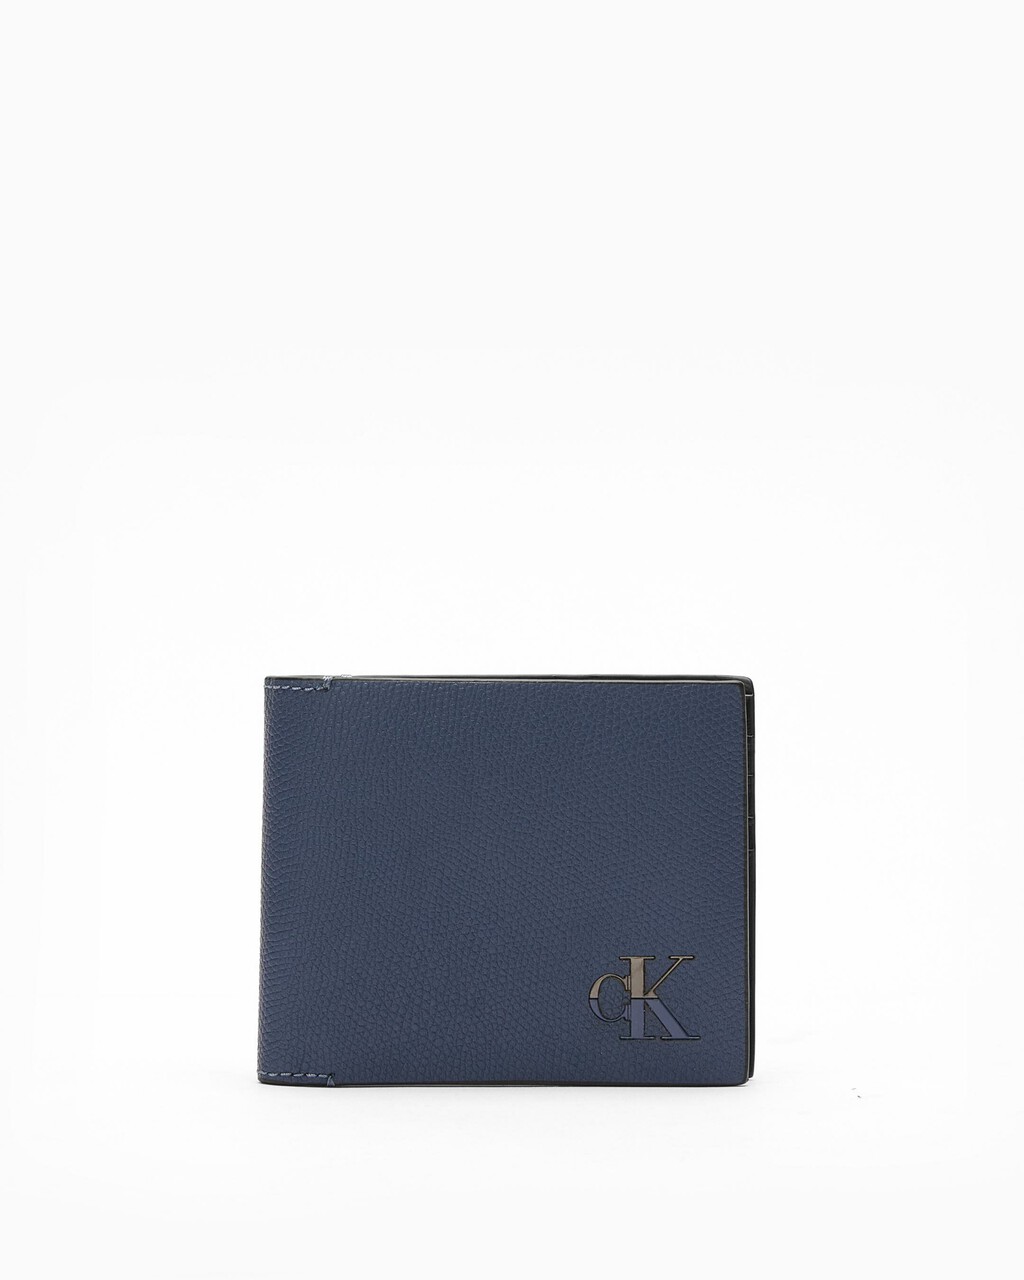 Louis Vuitton Men's Wallet, 11.11 Sale